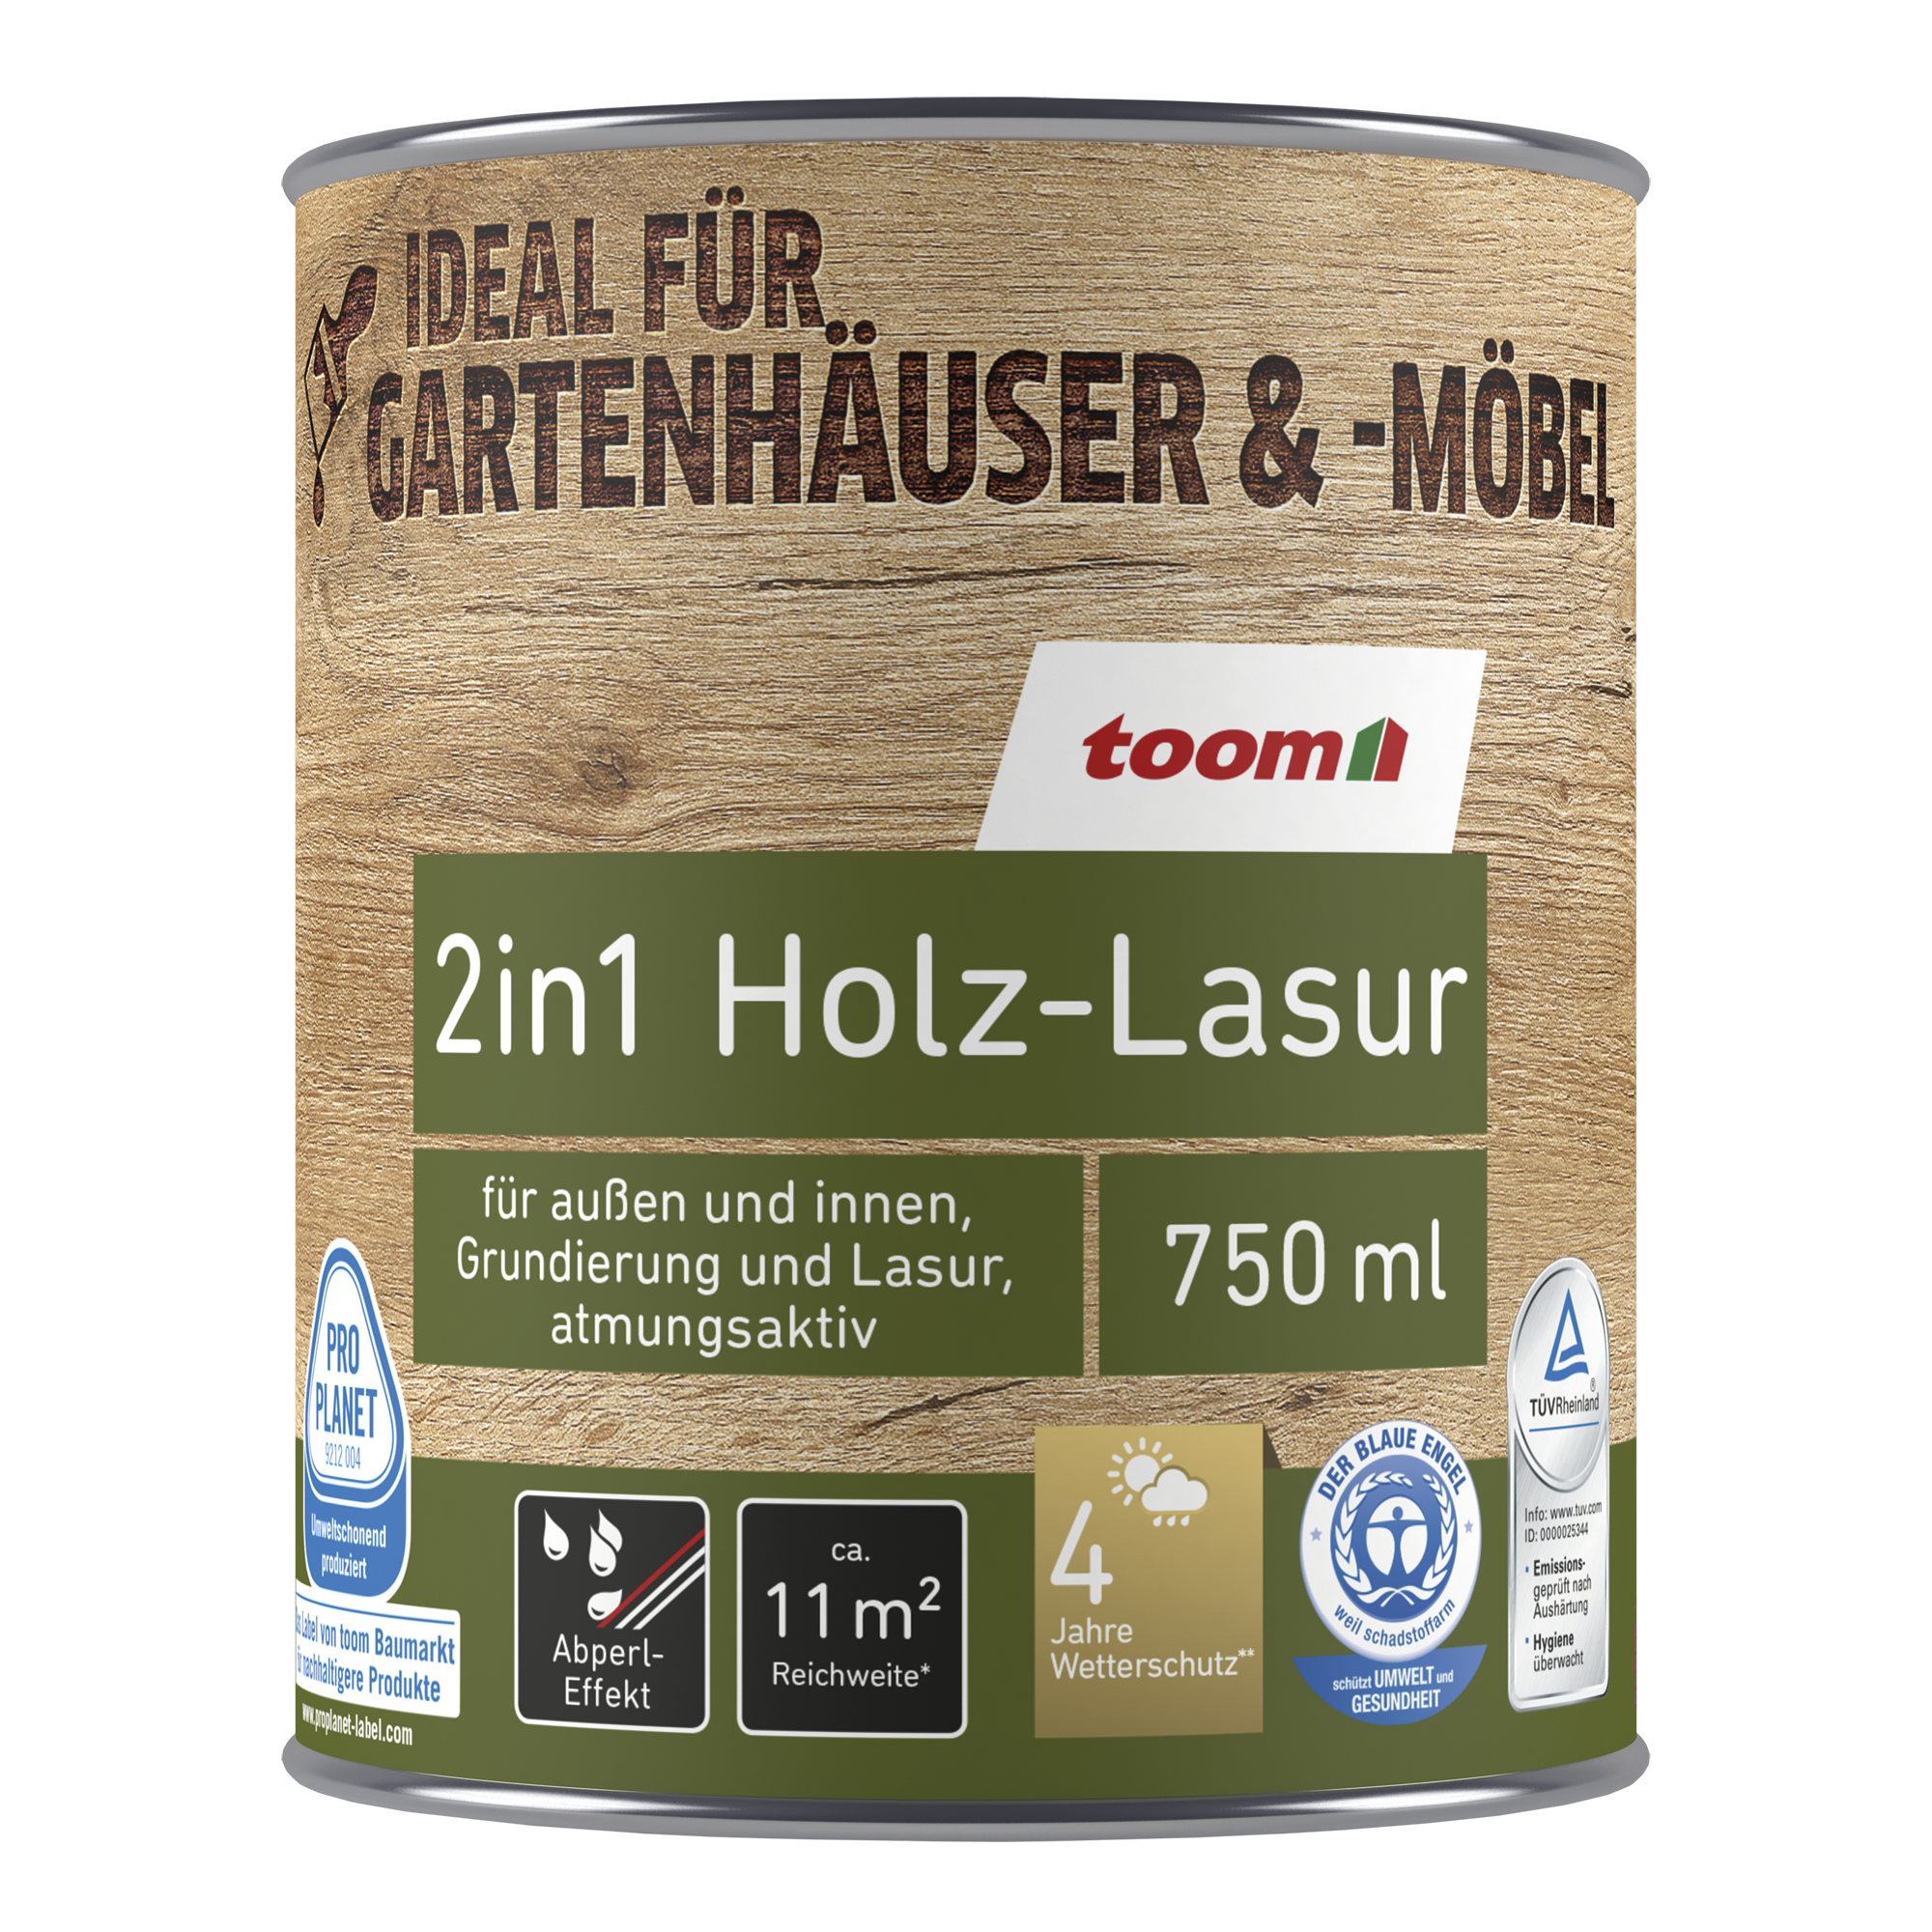 2in1 Holzlasur elefantengrau 750 ml + product picture